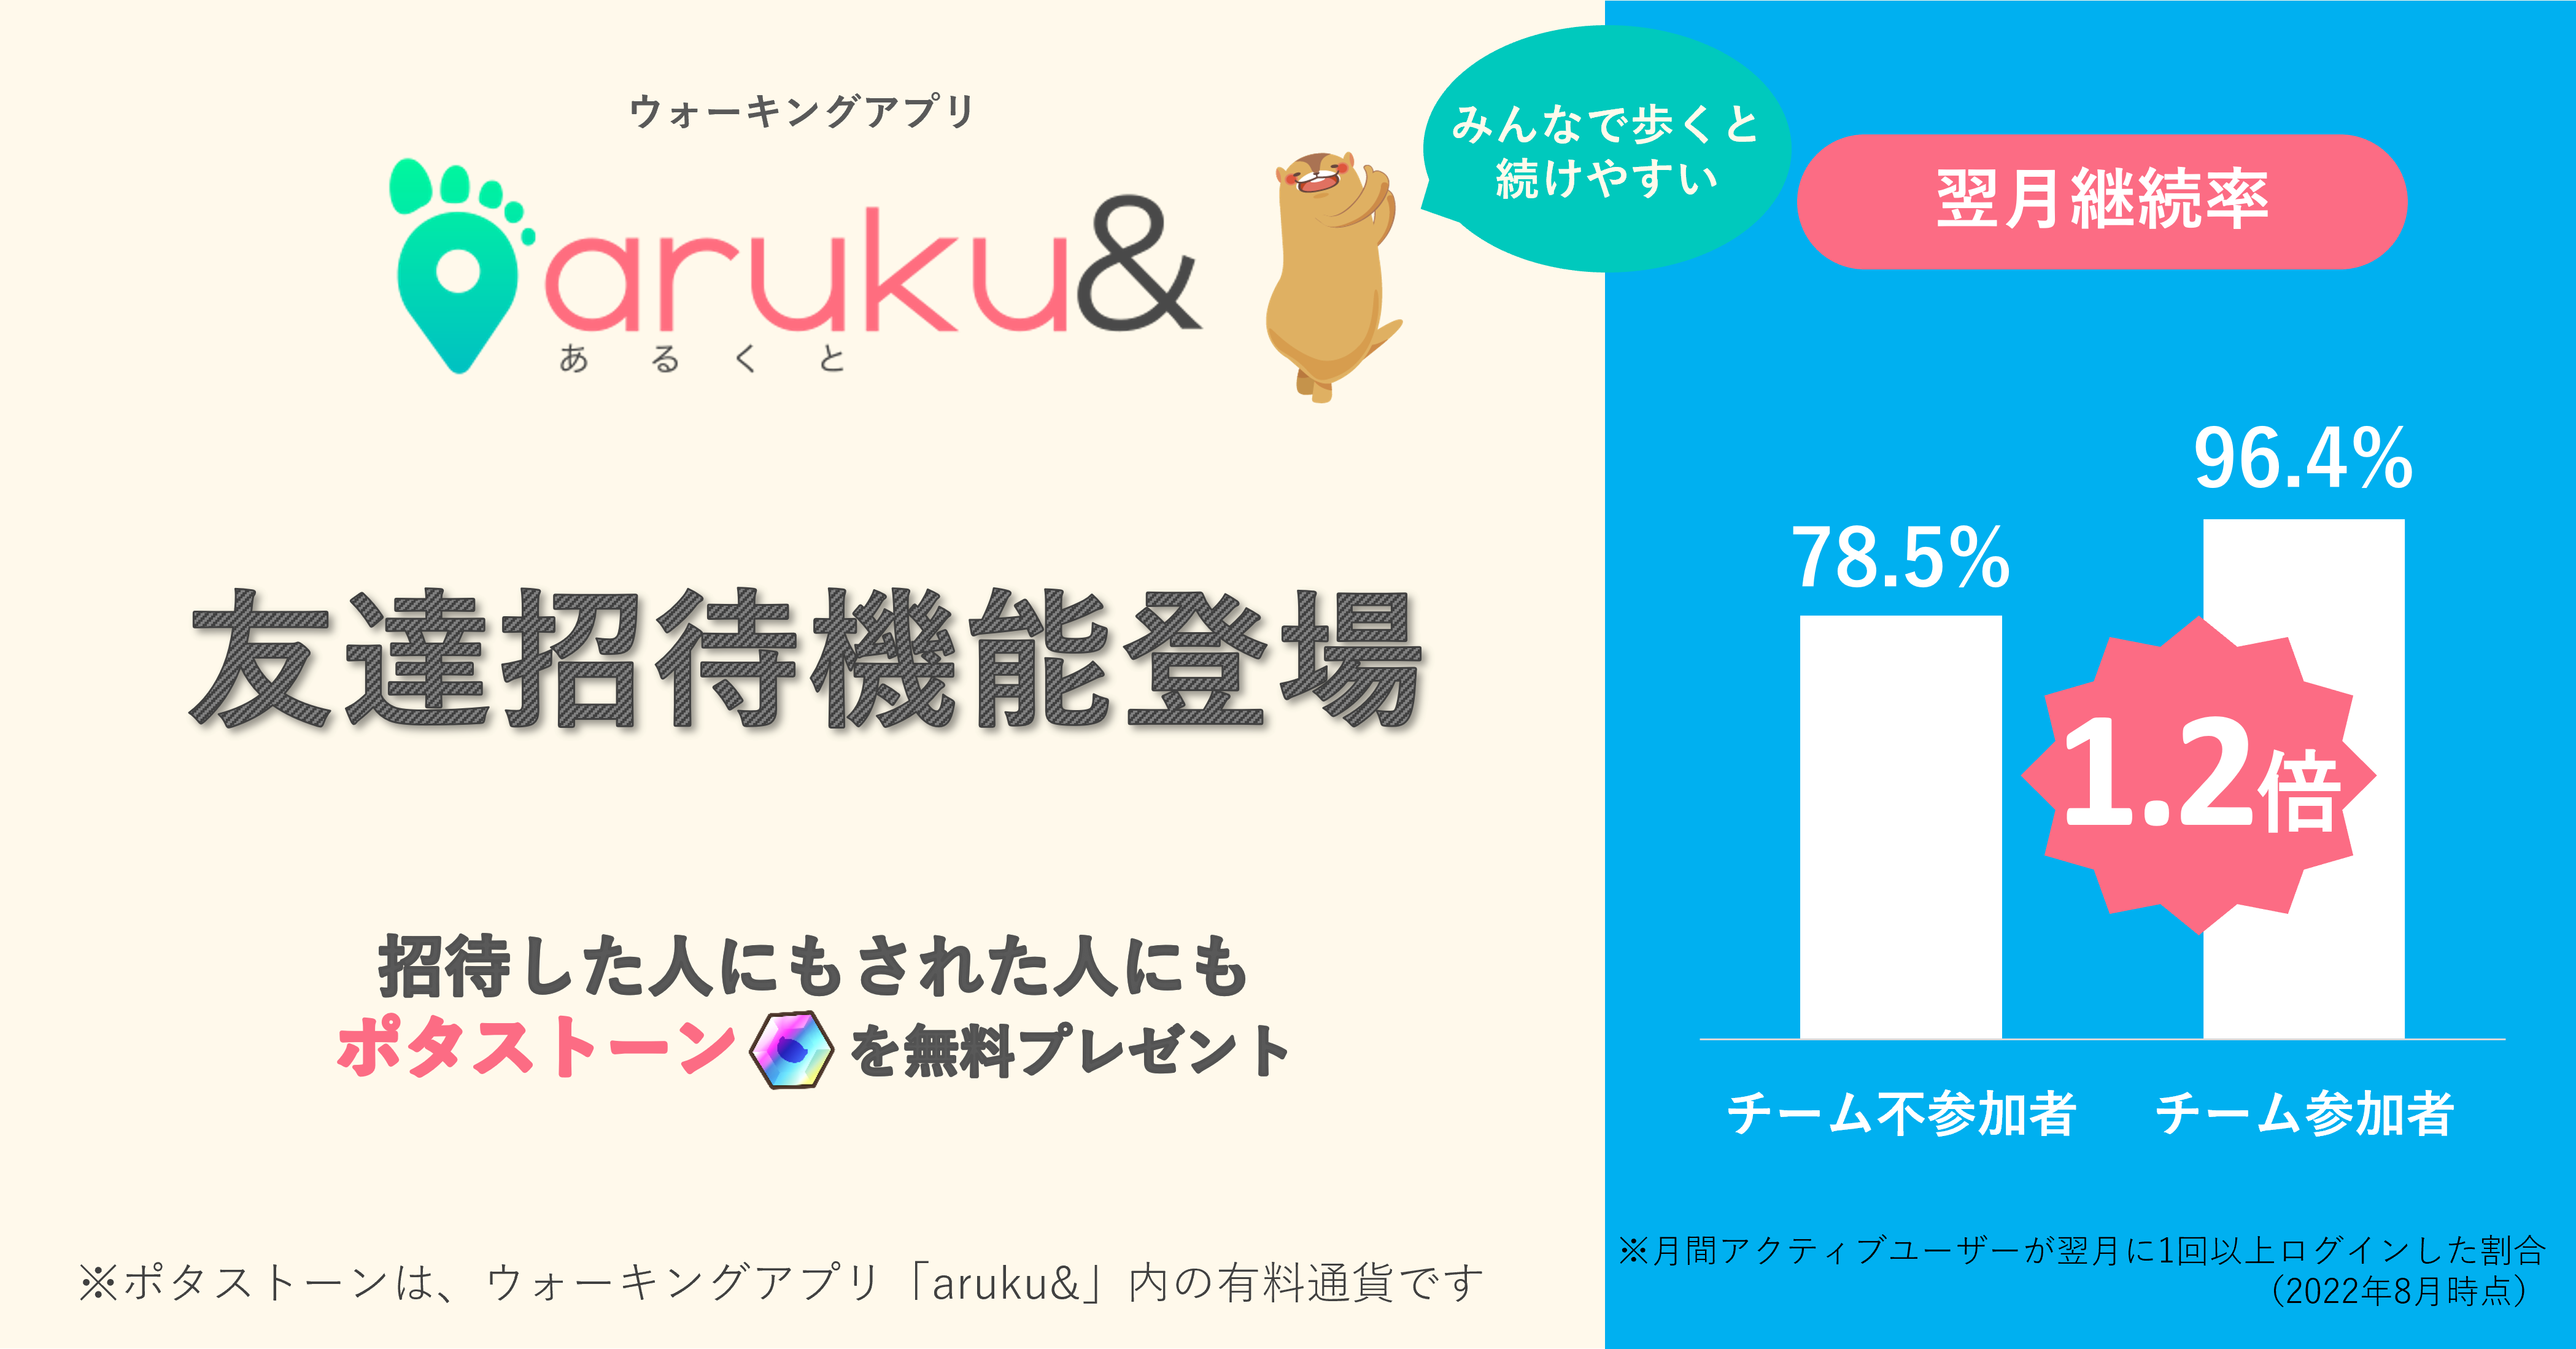 ウォーキングアプリ「aruku&」、友達招待機能が登場